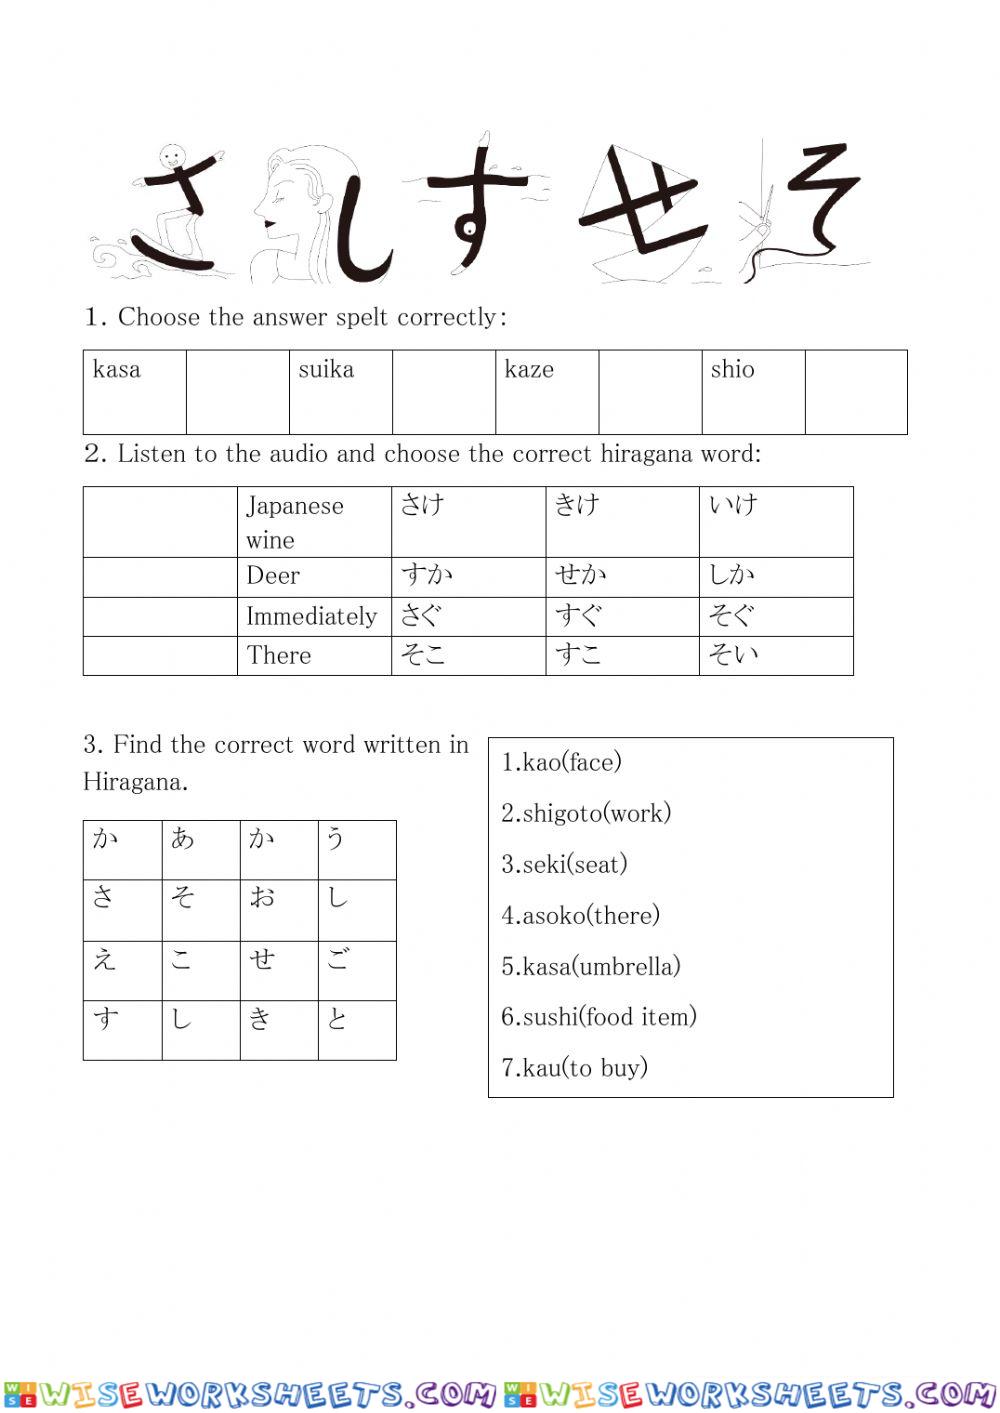 Revision hiragana sa - so